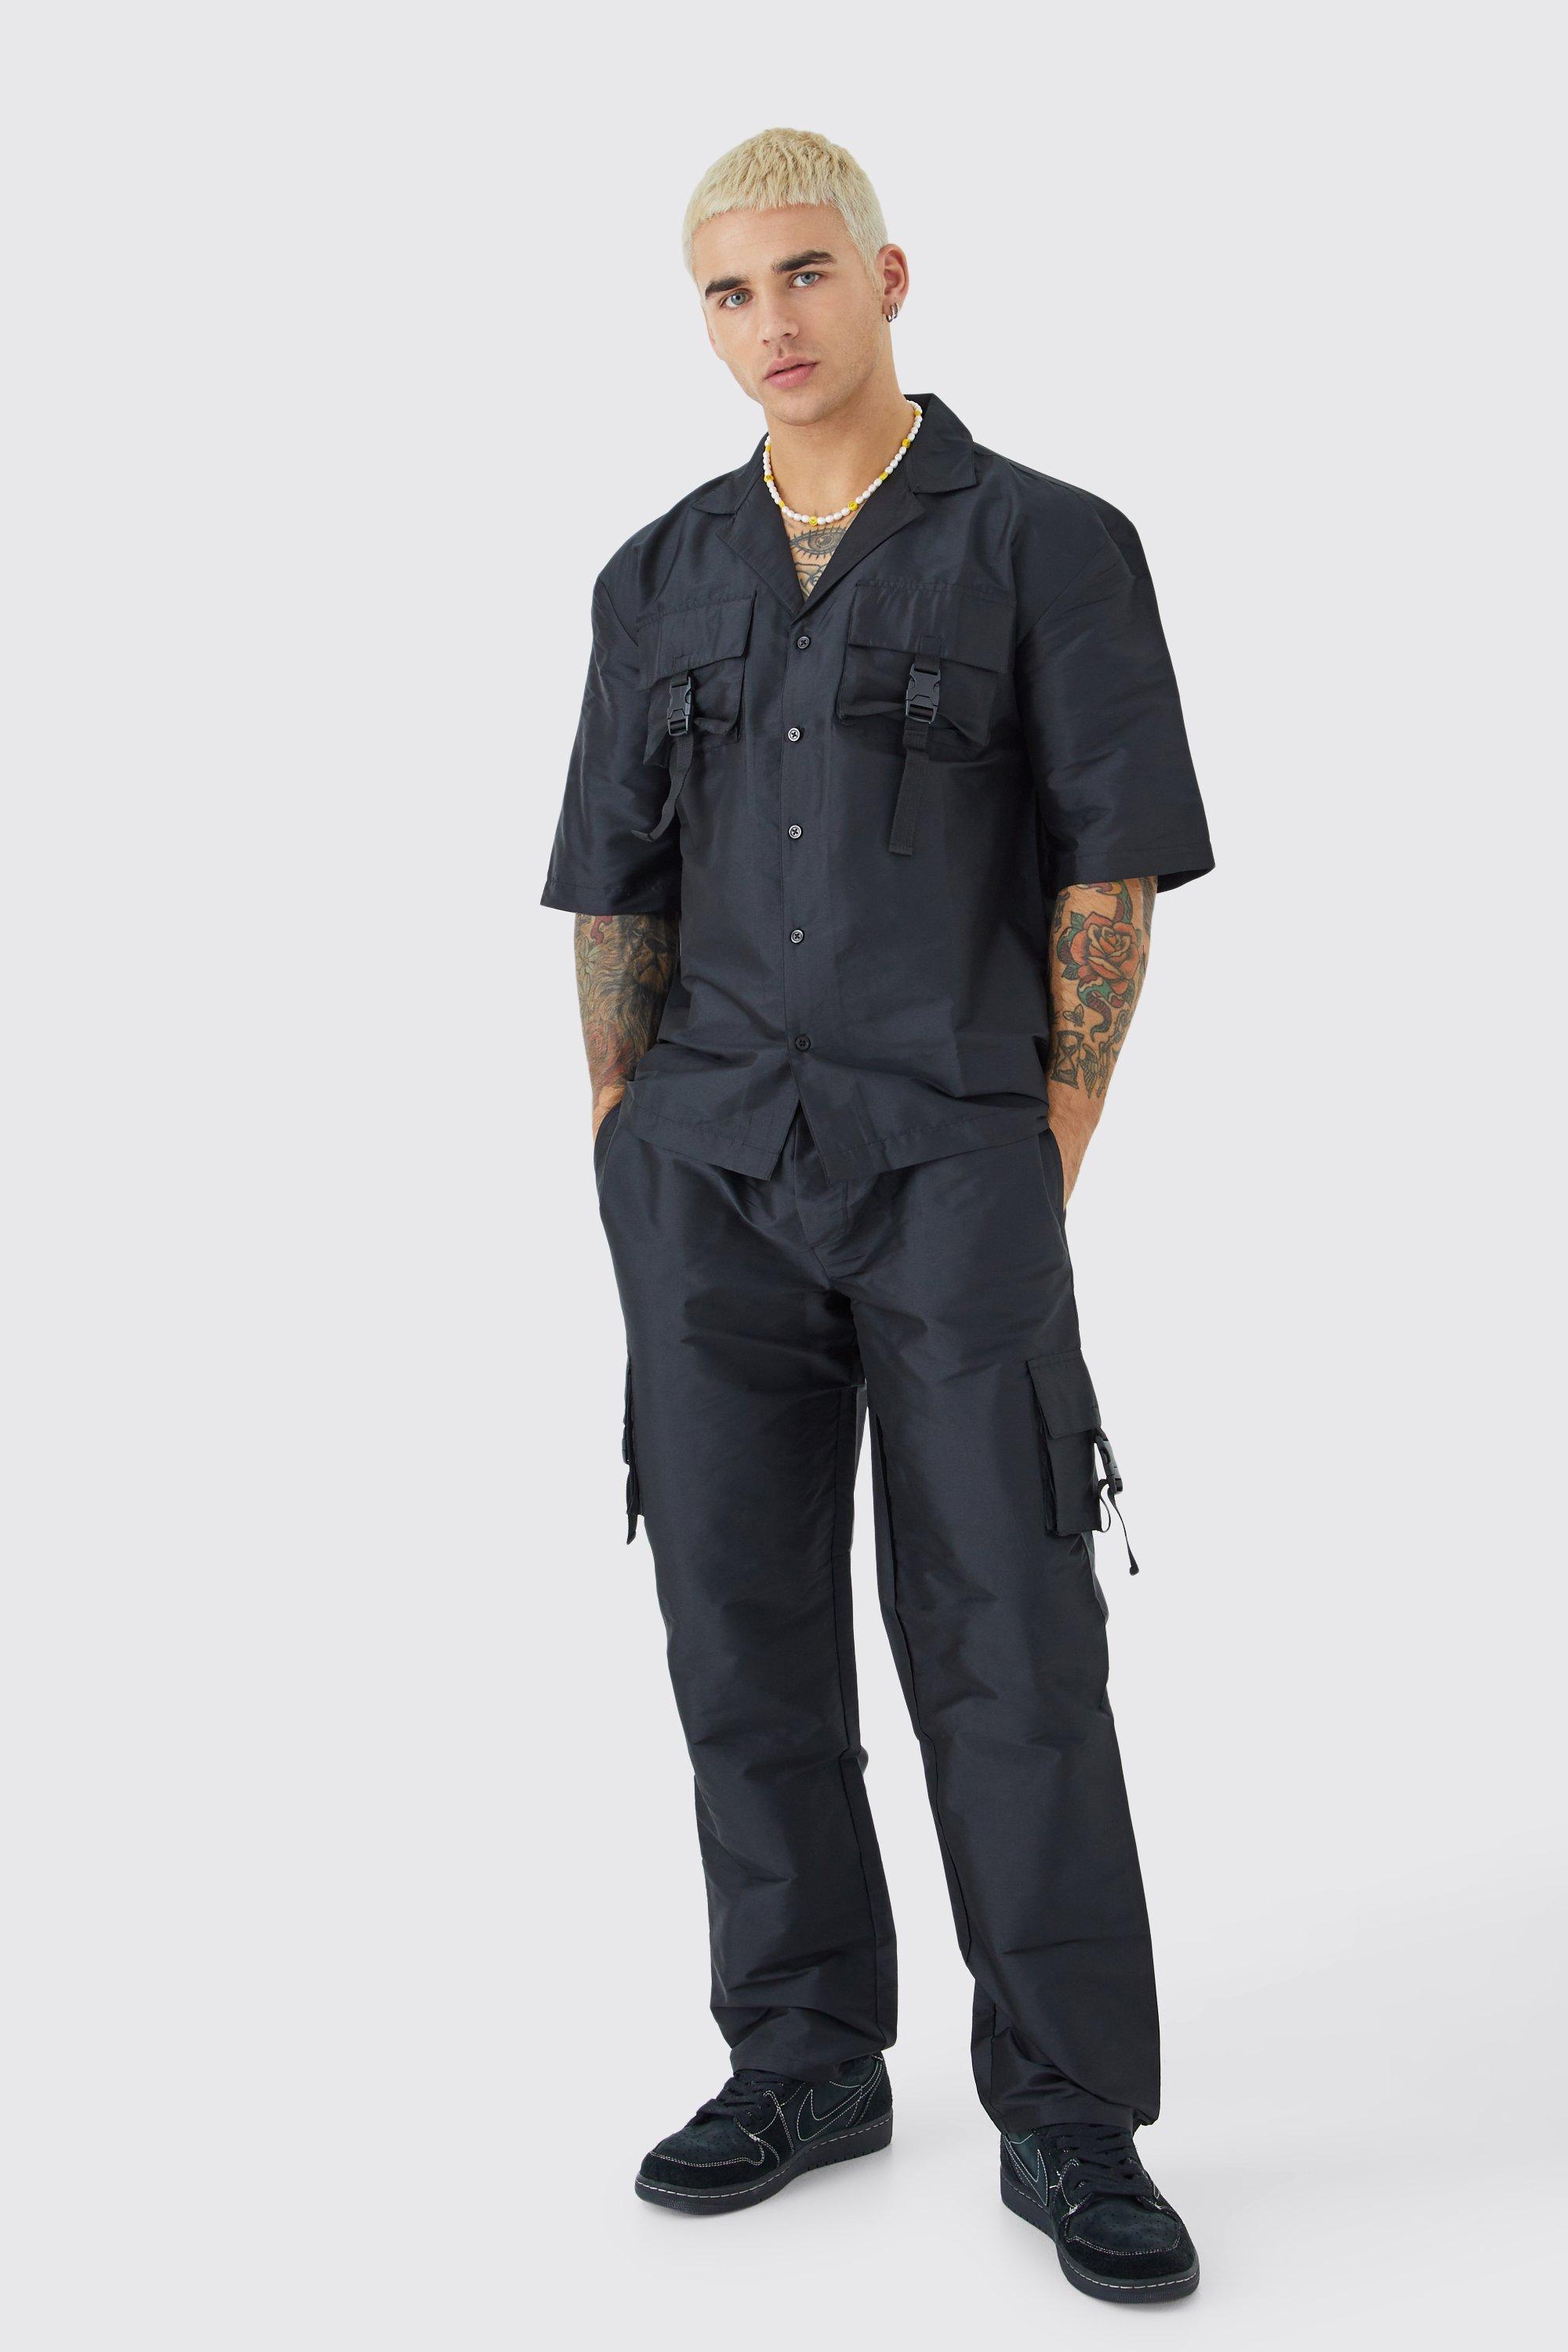 ensemble utilitaire avec chemise à manches courtes et pantalon cargo homme - noir - s, noir